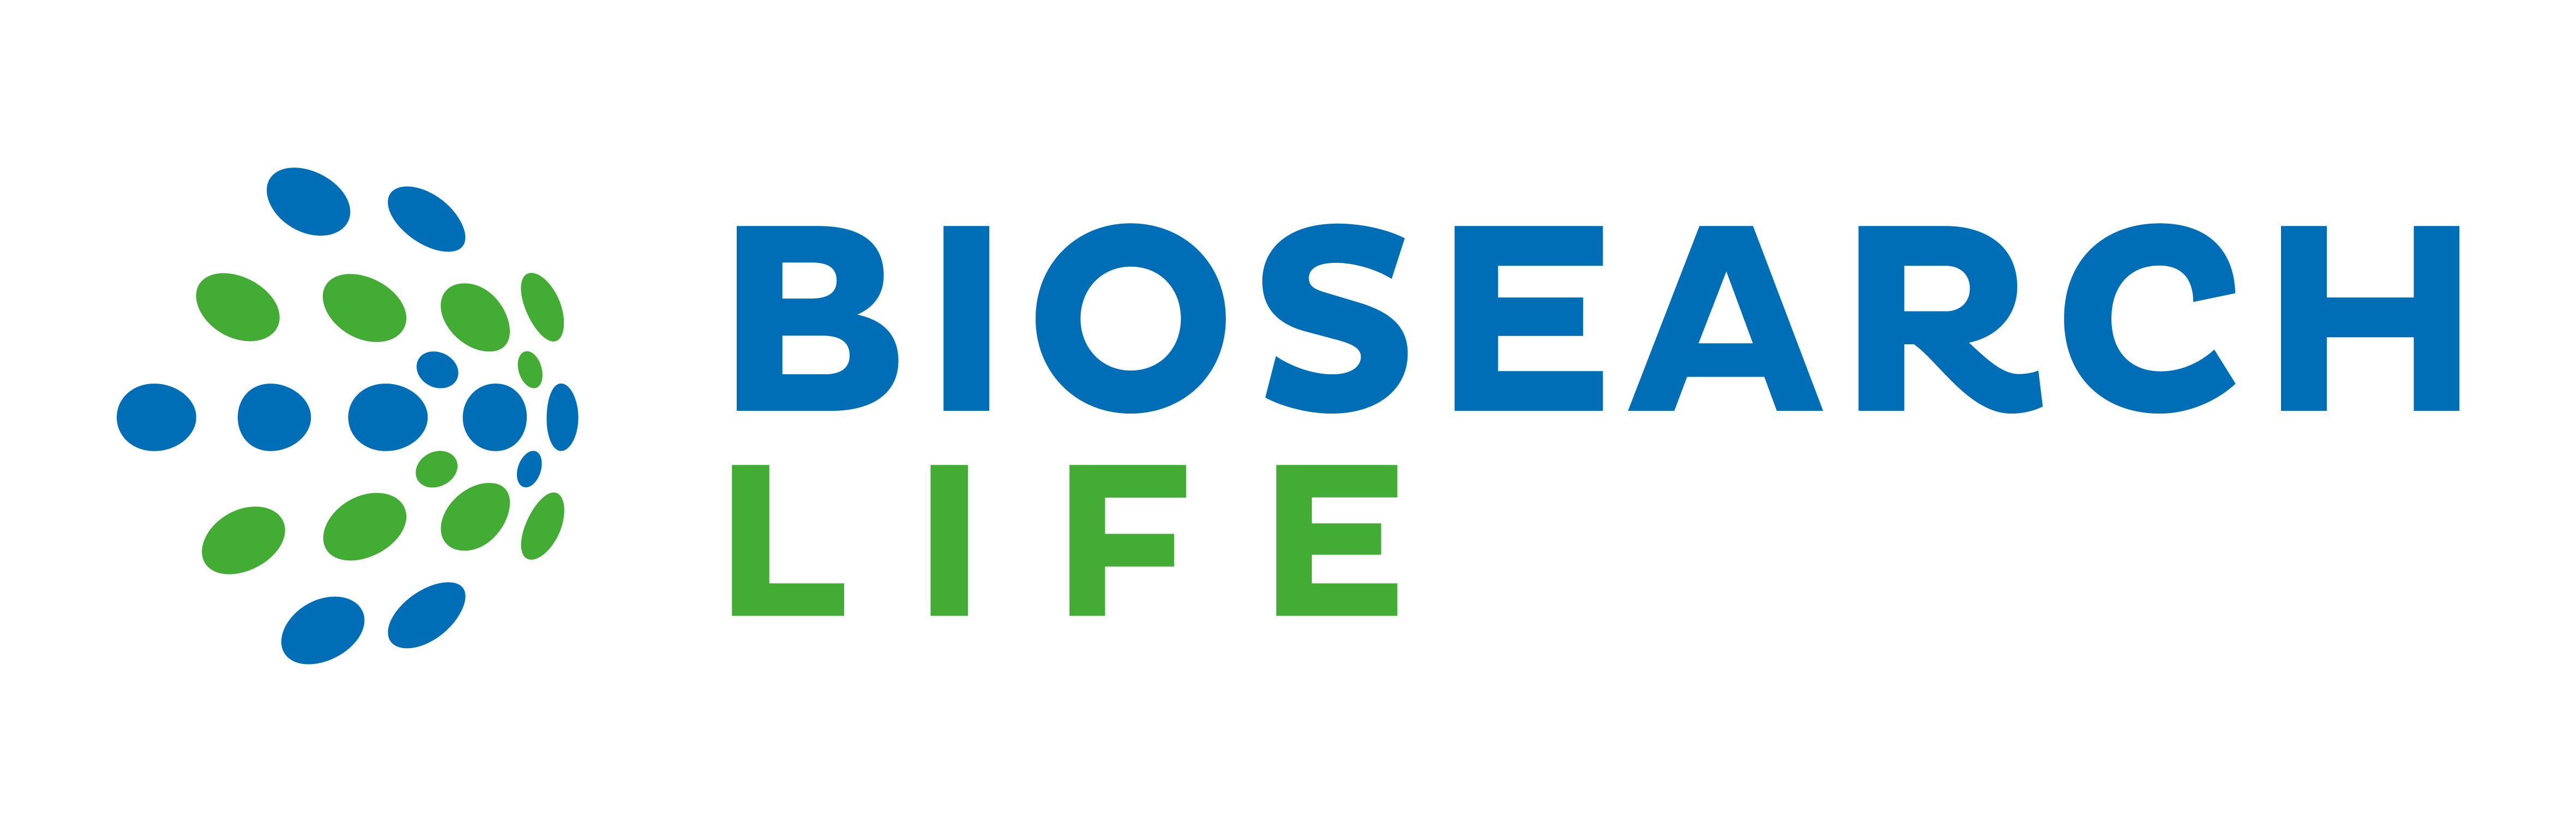 biosearch life